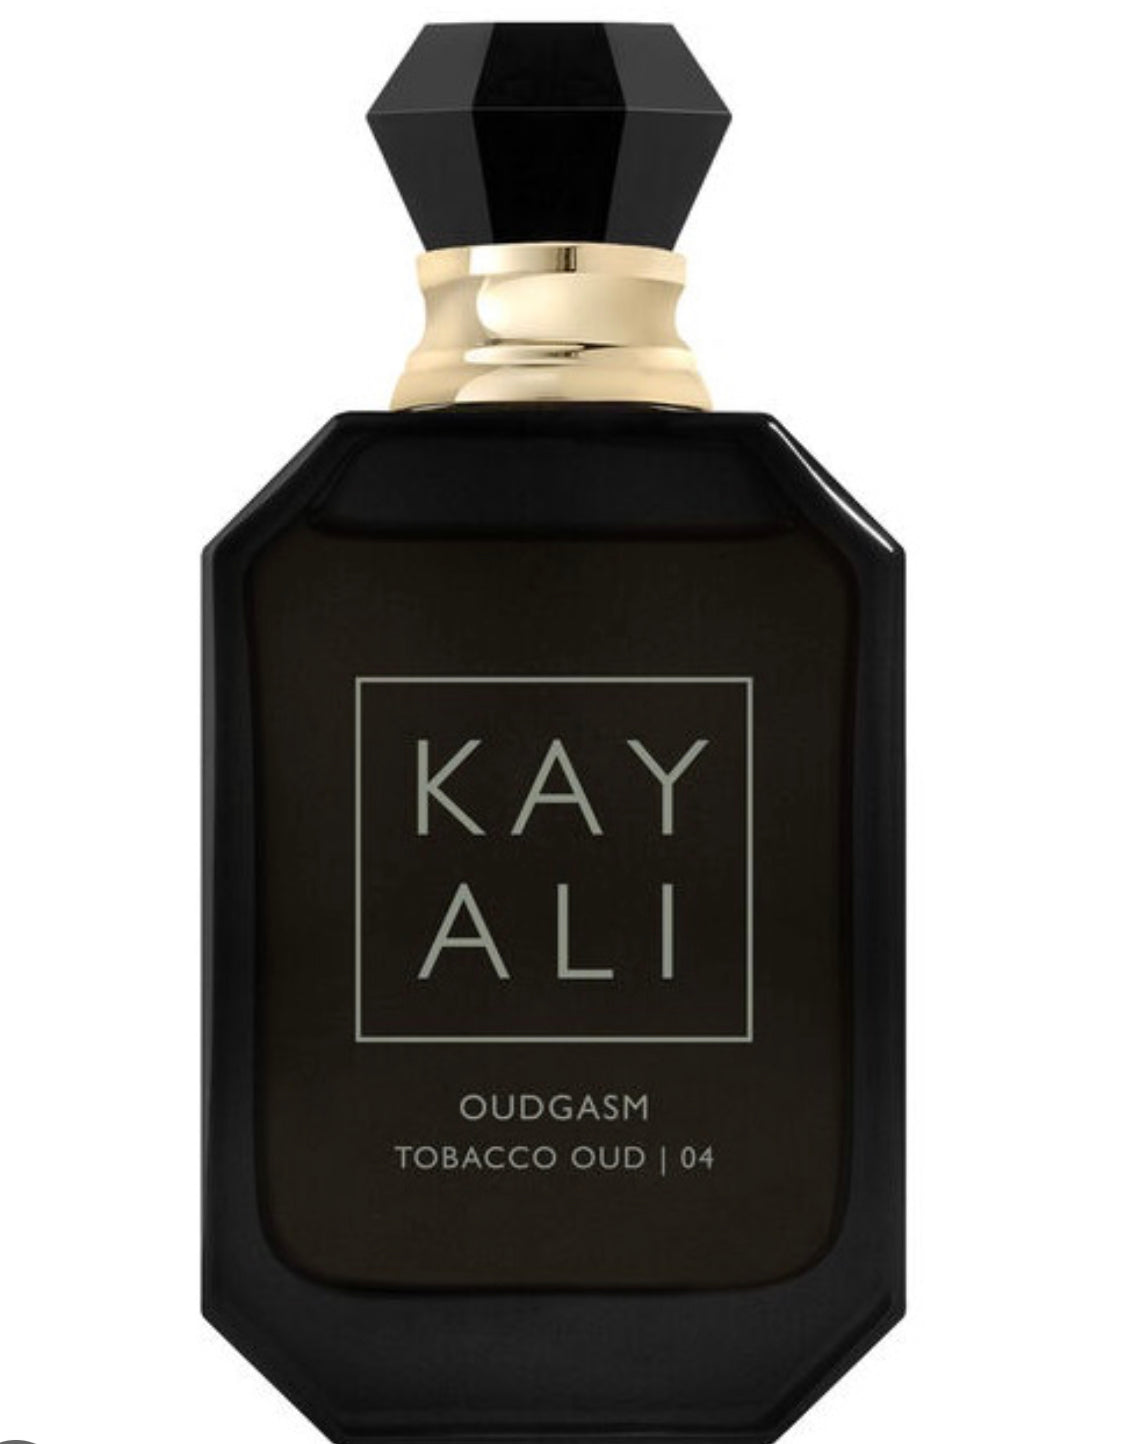 KAYALI Oudgasm Tobacco Oud 04 NEW RELEASE 2023!! Eau De Parfum Samples